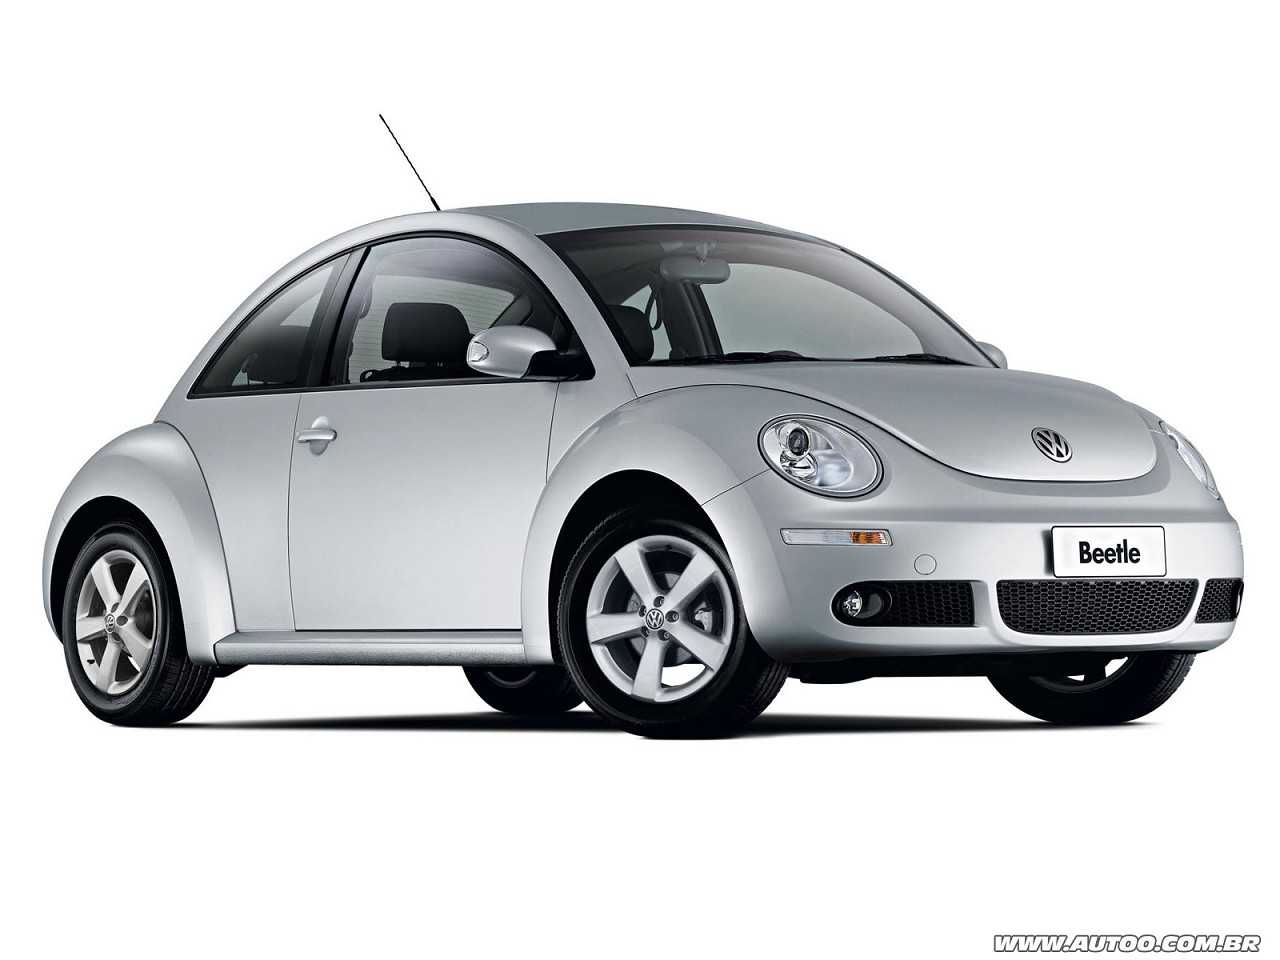 Volkswagen New Beetle